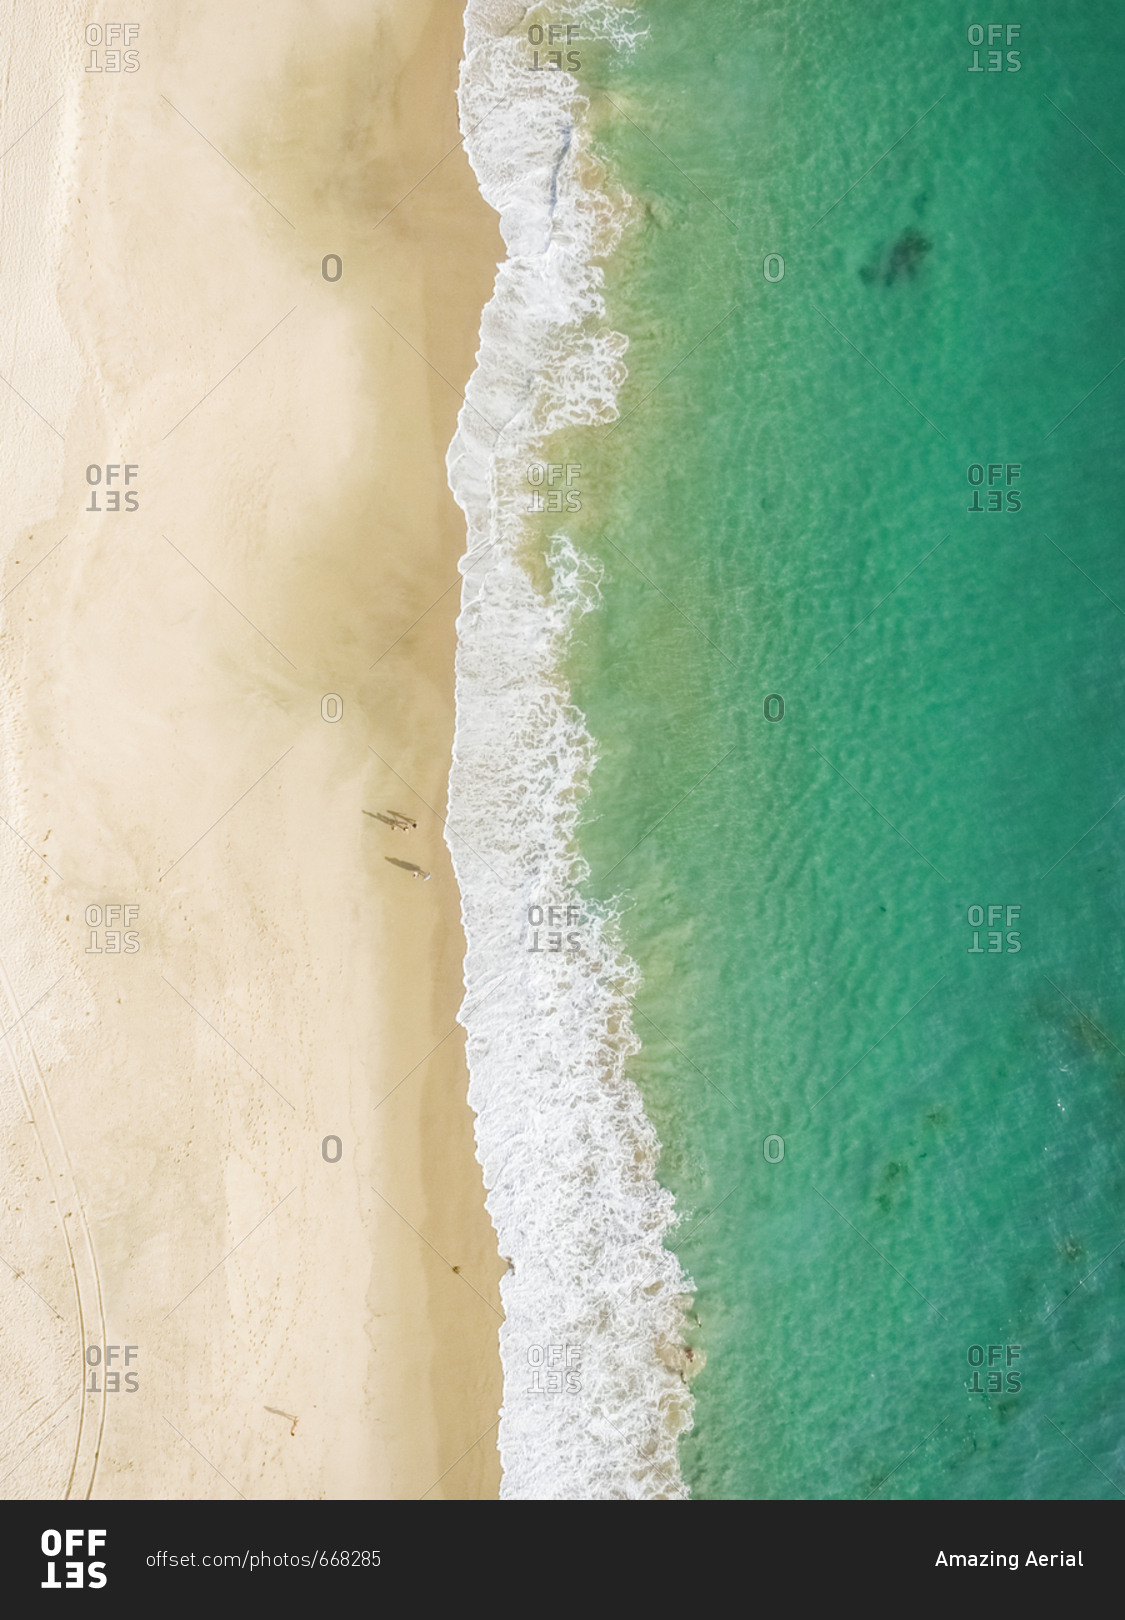 Aerial view of Victoria Beach in Laguna Beach, California, USA.